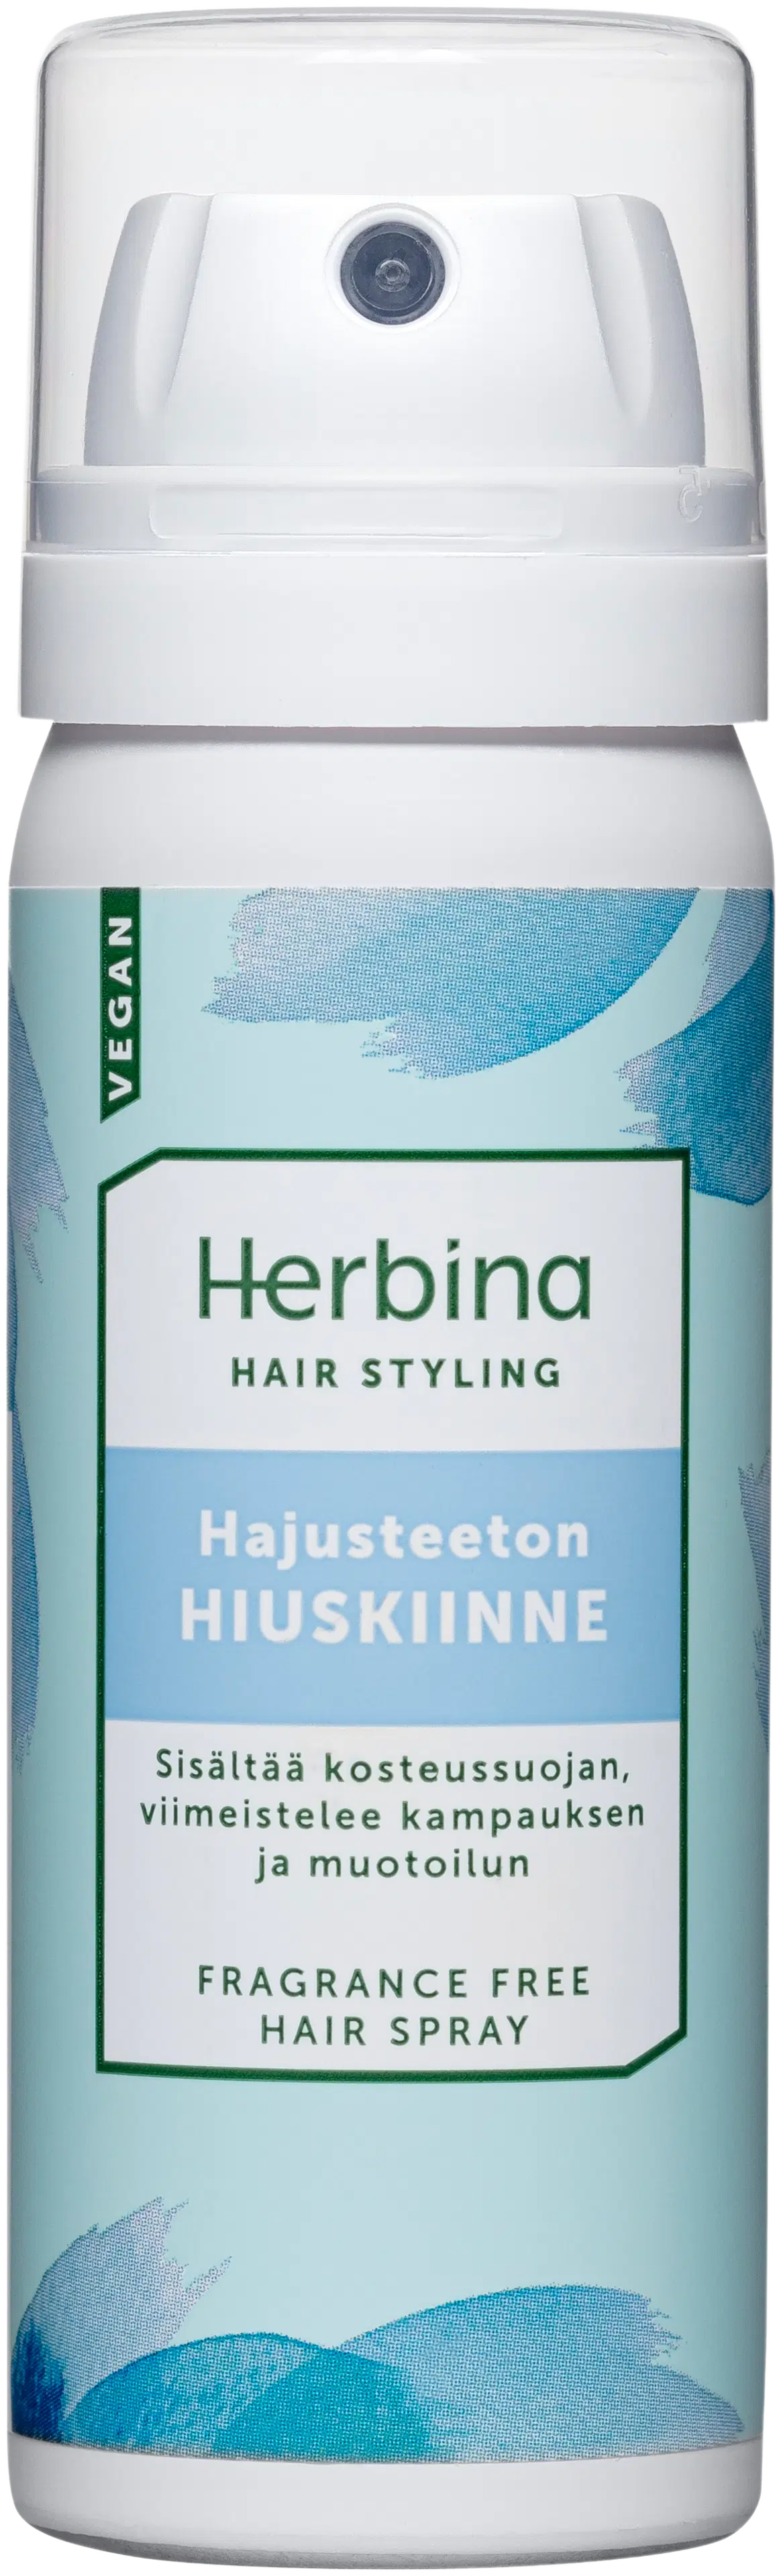 Herbina 50ml Hajusteeton hiuskiinne